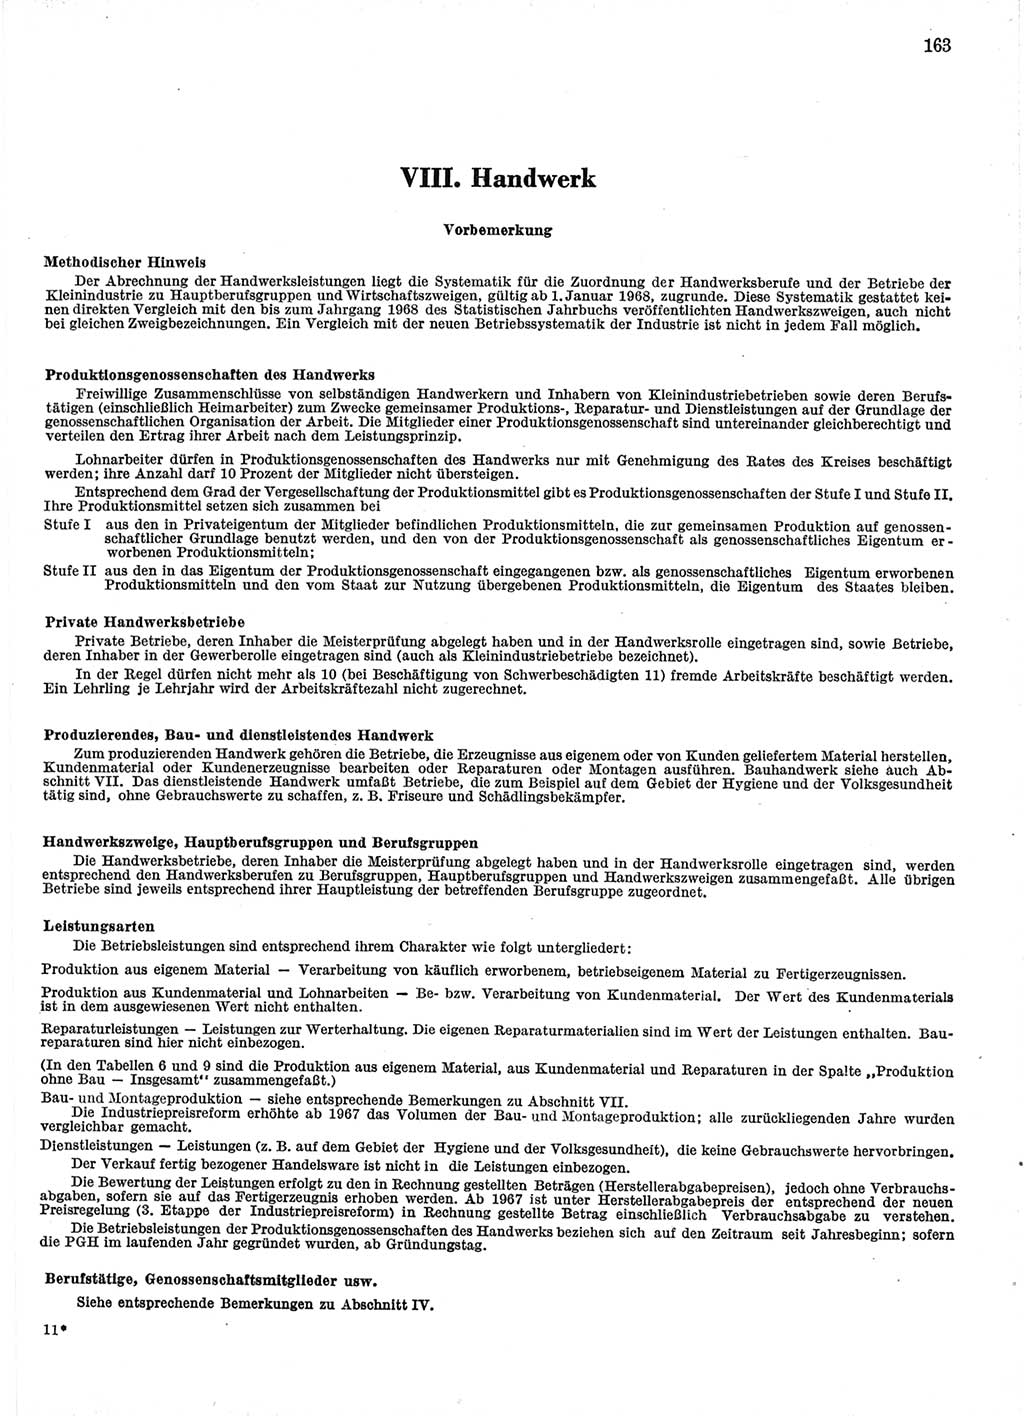 Statistisches Jahrbuch der Deutschen Demokratischen Republik (DDR) 1971, Seite 163 (Stat. Jb. DDR 1971, S. 163)